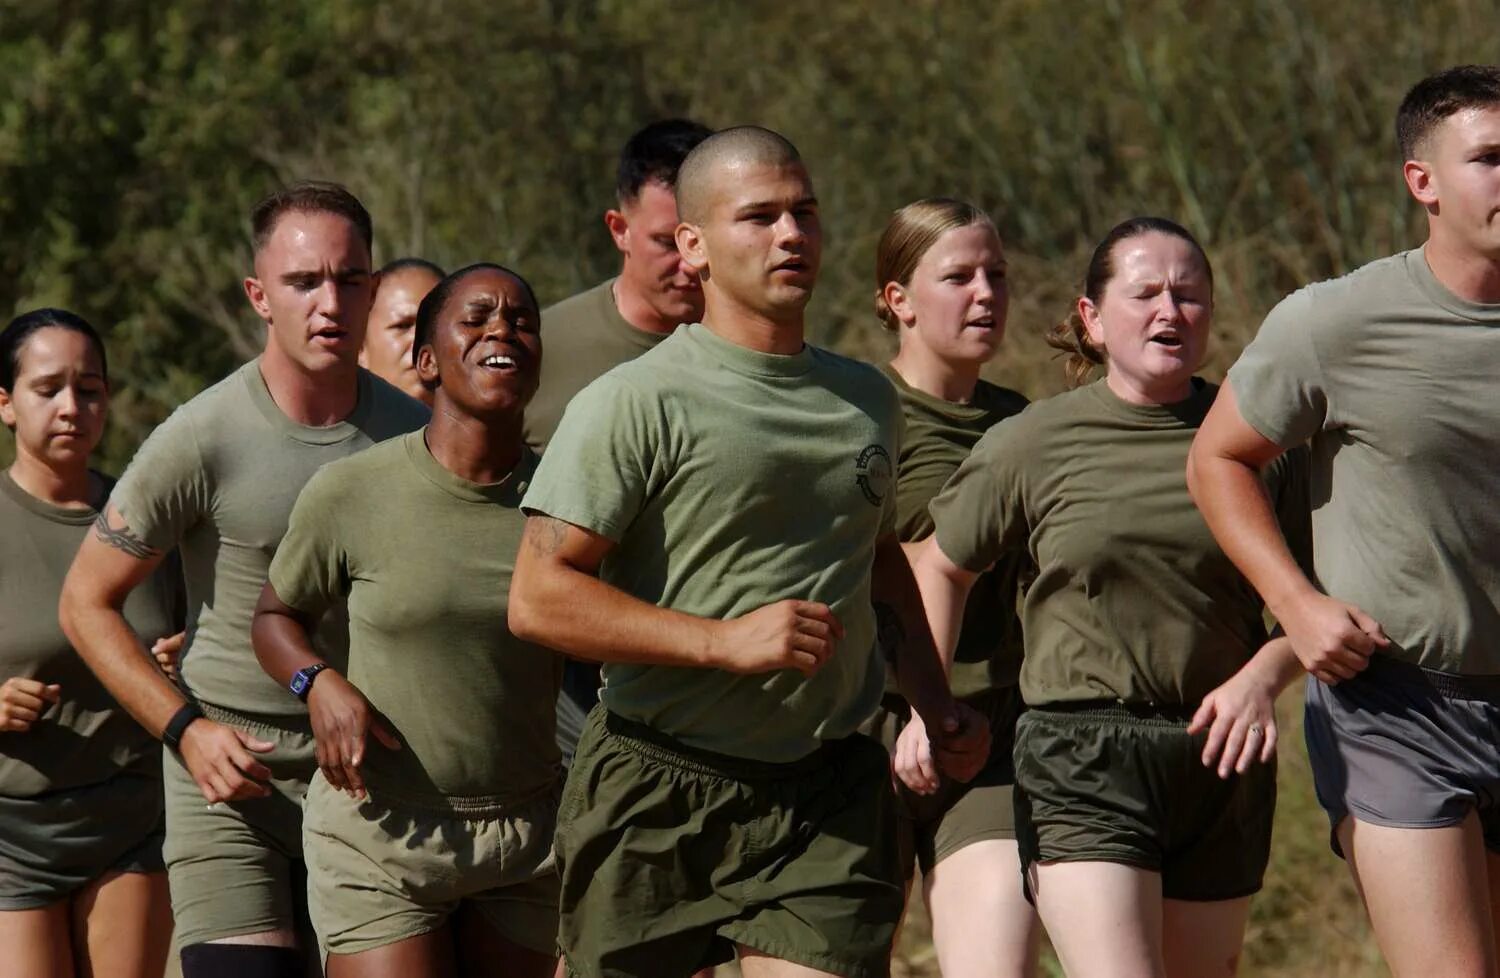 Тренировка военных. Физическая подготовка военнослужащих. Американские военные тренировки. Морпехи США на пробежке. Corps users